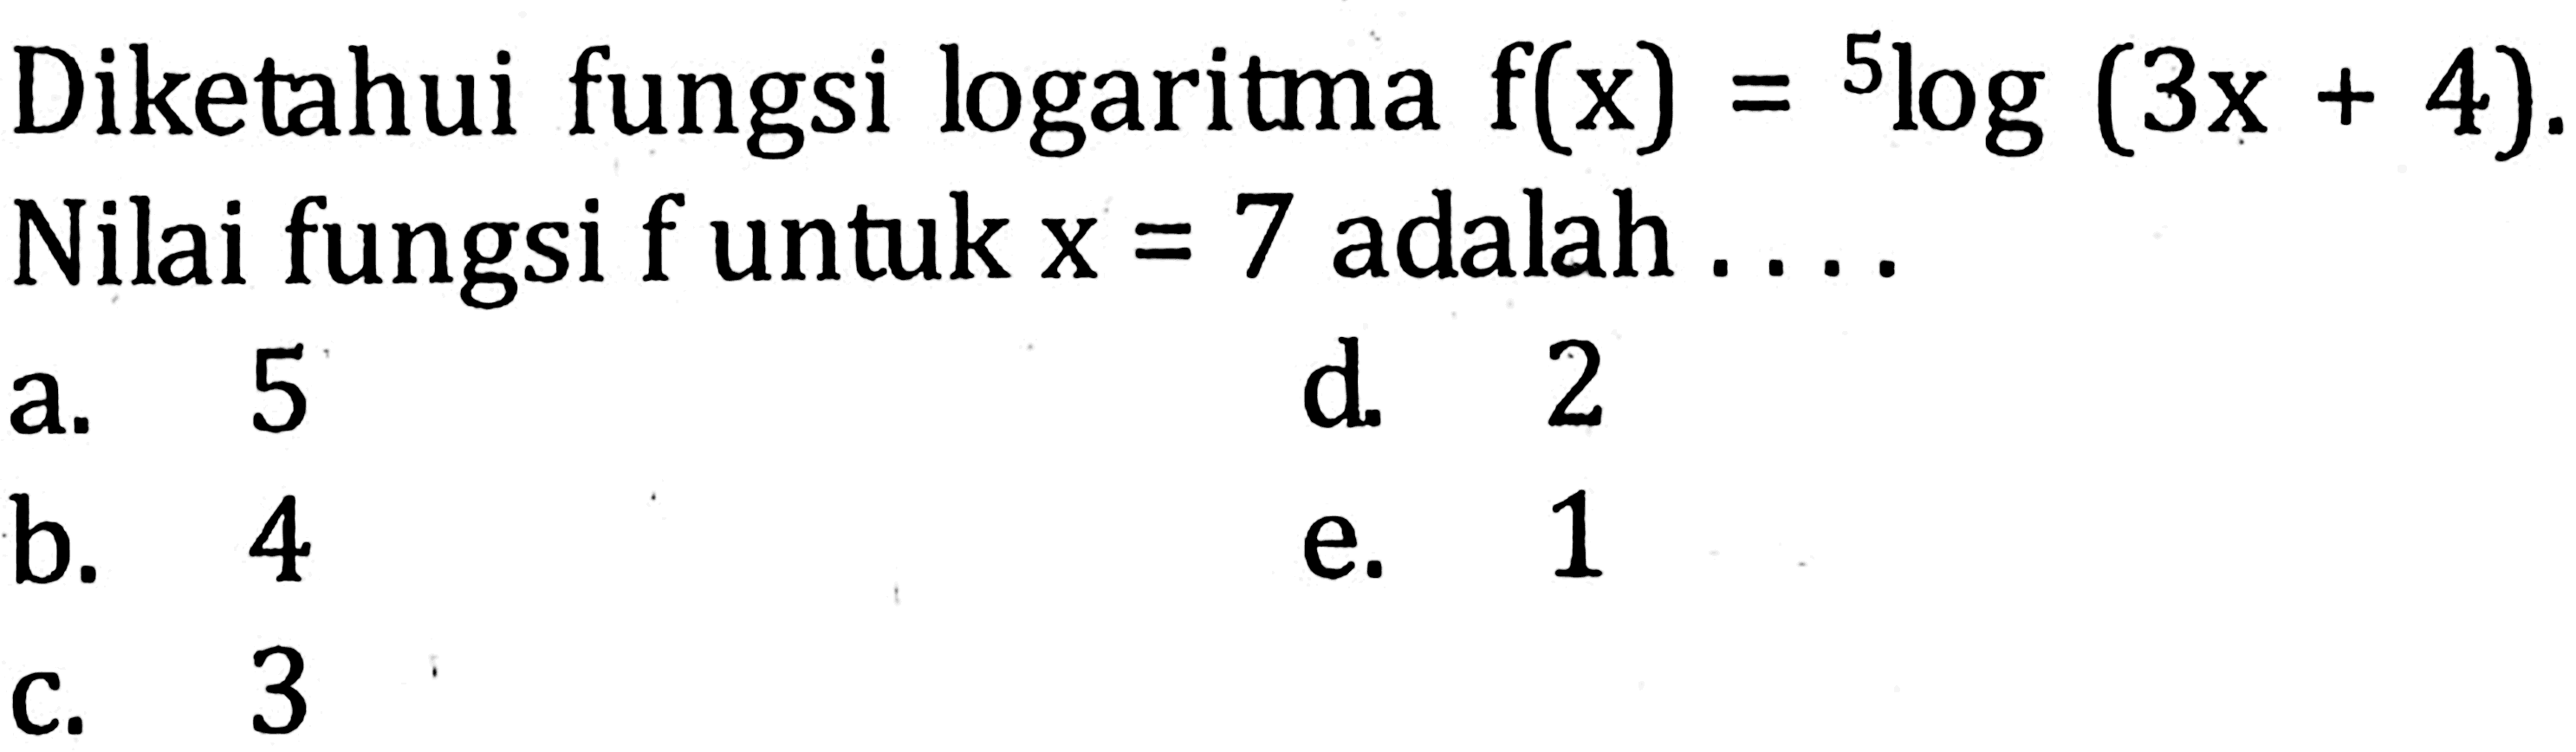 Diketahui fungsi logaritma f(x)=5log(3x+4). Nilai fungsi f untuk x = 7 adalah....